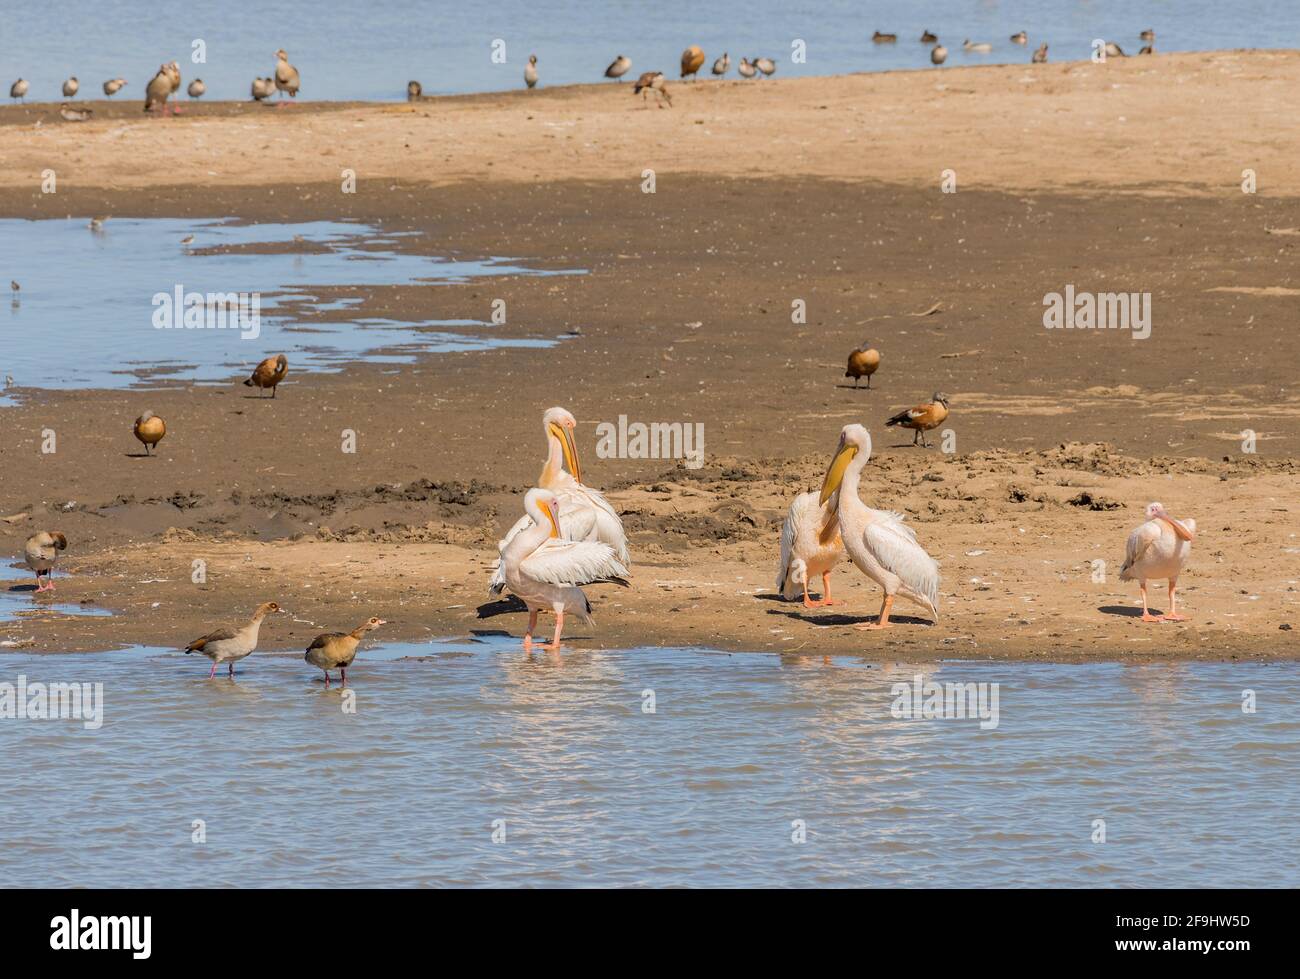 Wild white pelicans on a sandbar, Namibia Stock Photo